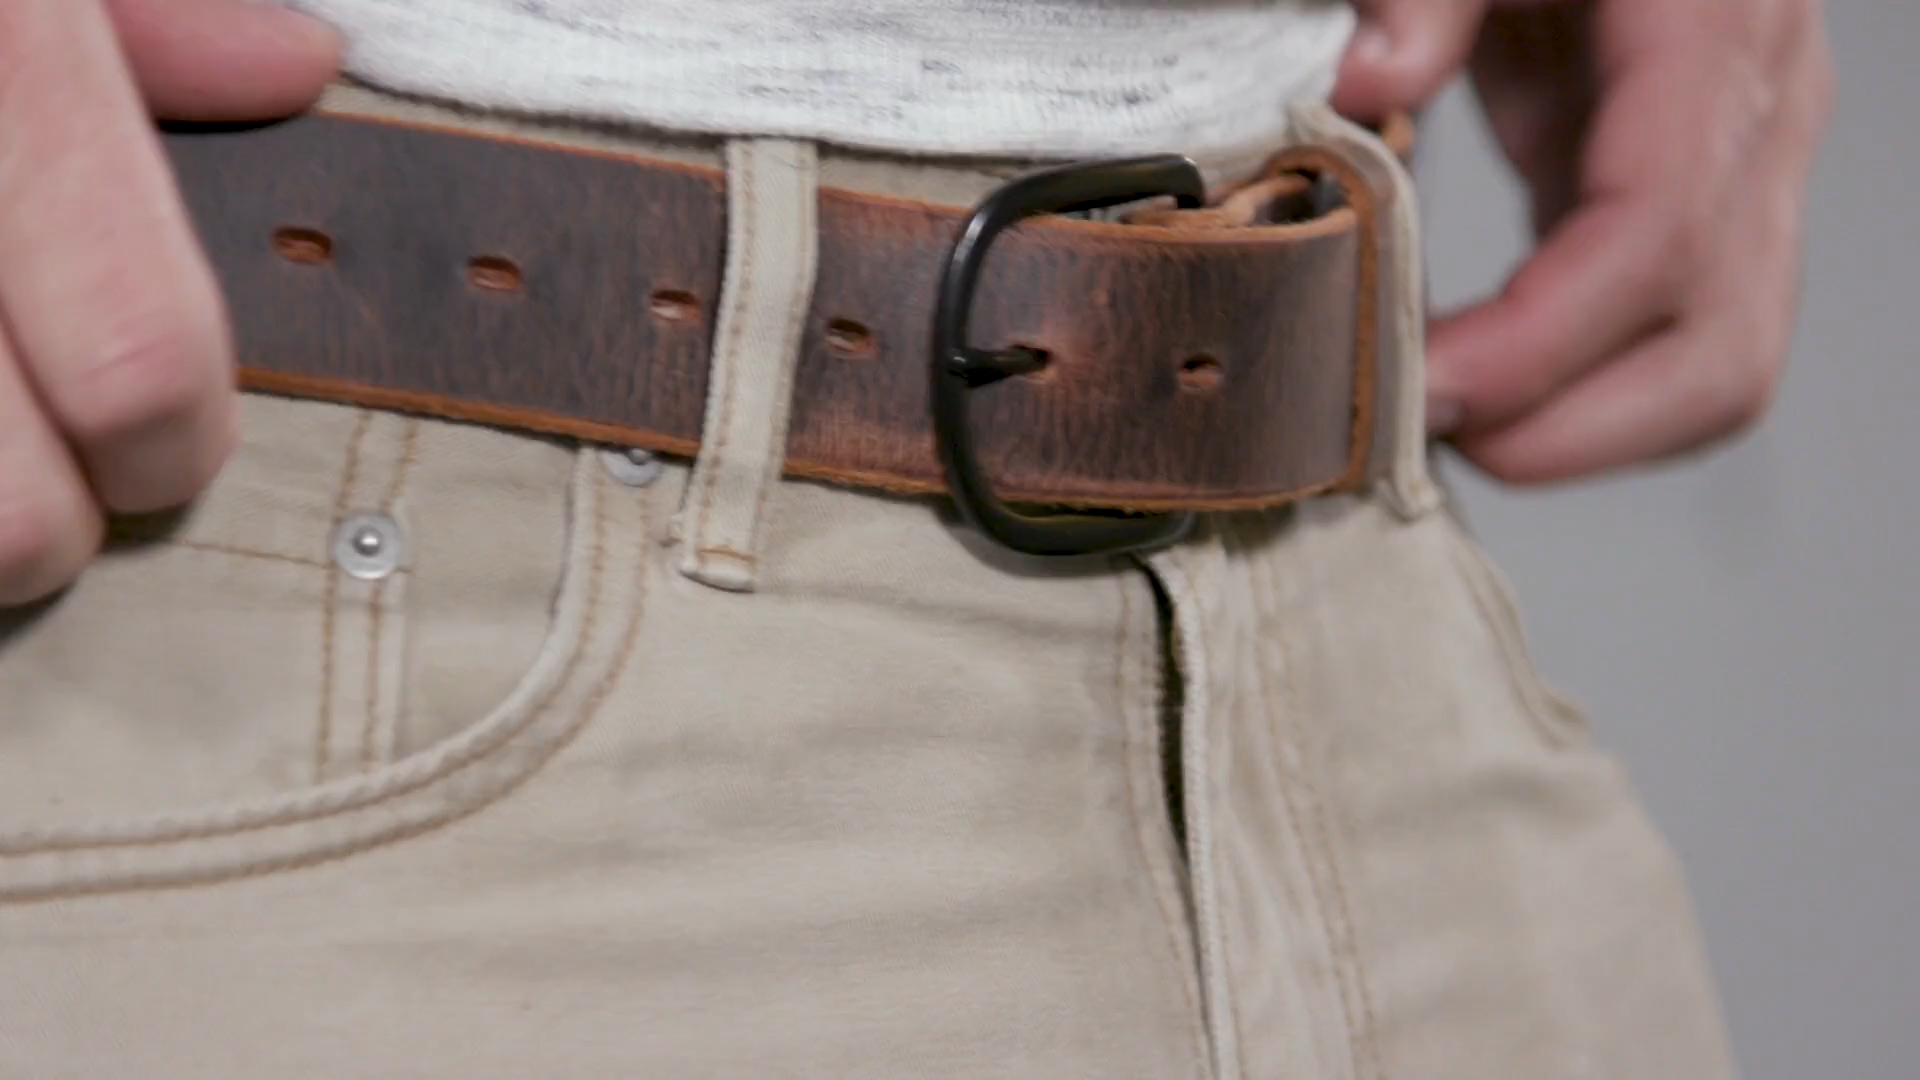 The Bootlegger Leather Belt